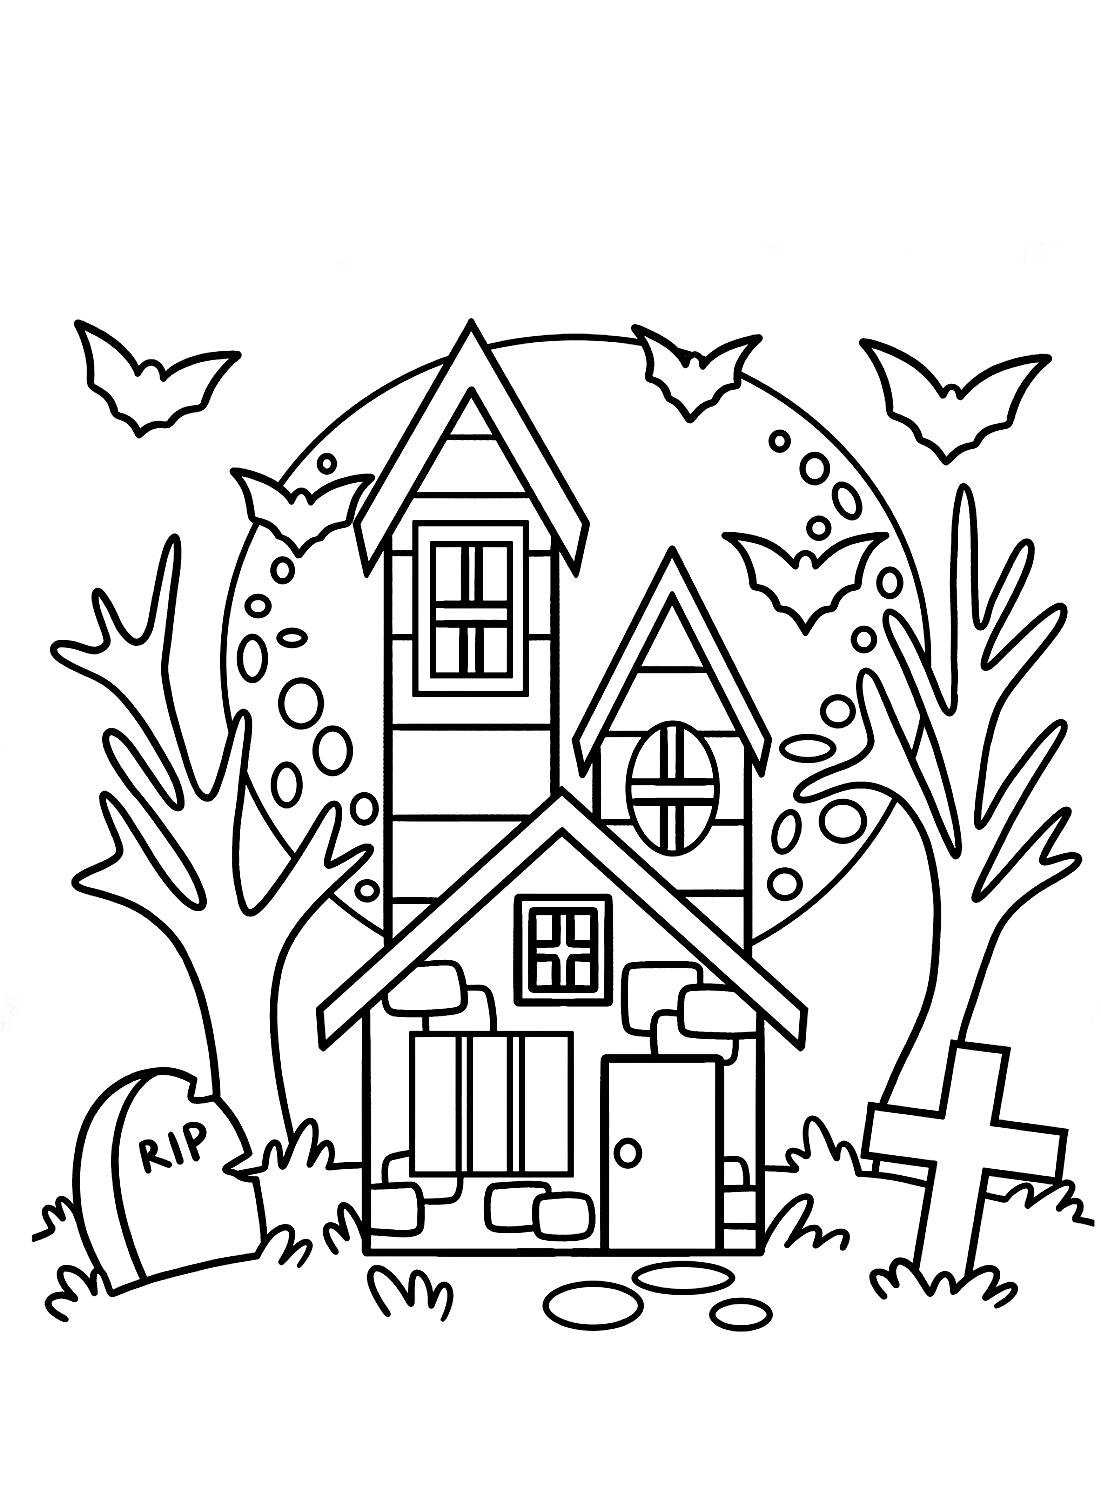 Página para colorear de la casa de Halloween de Haunted House